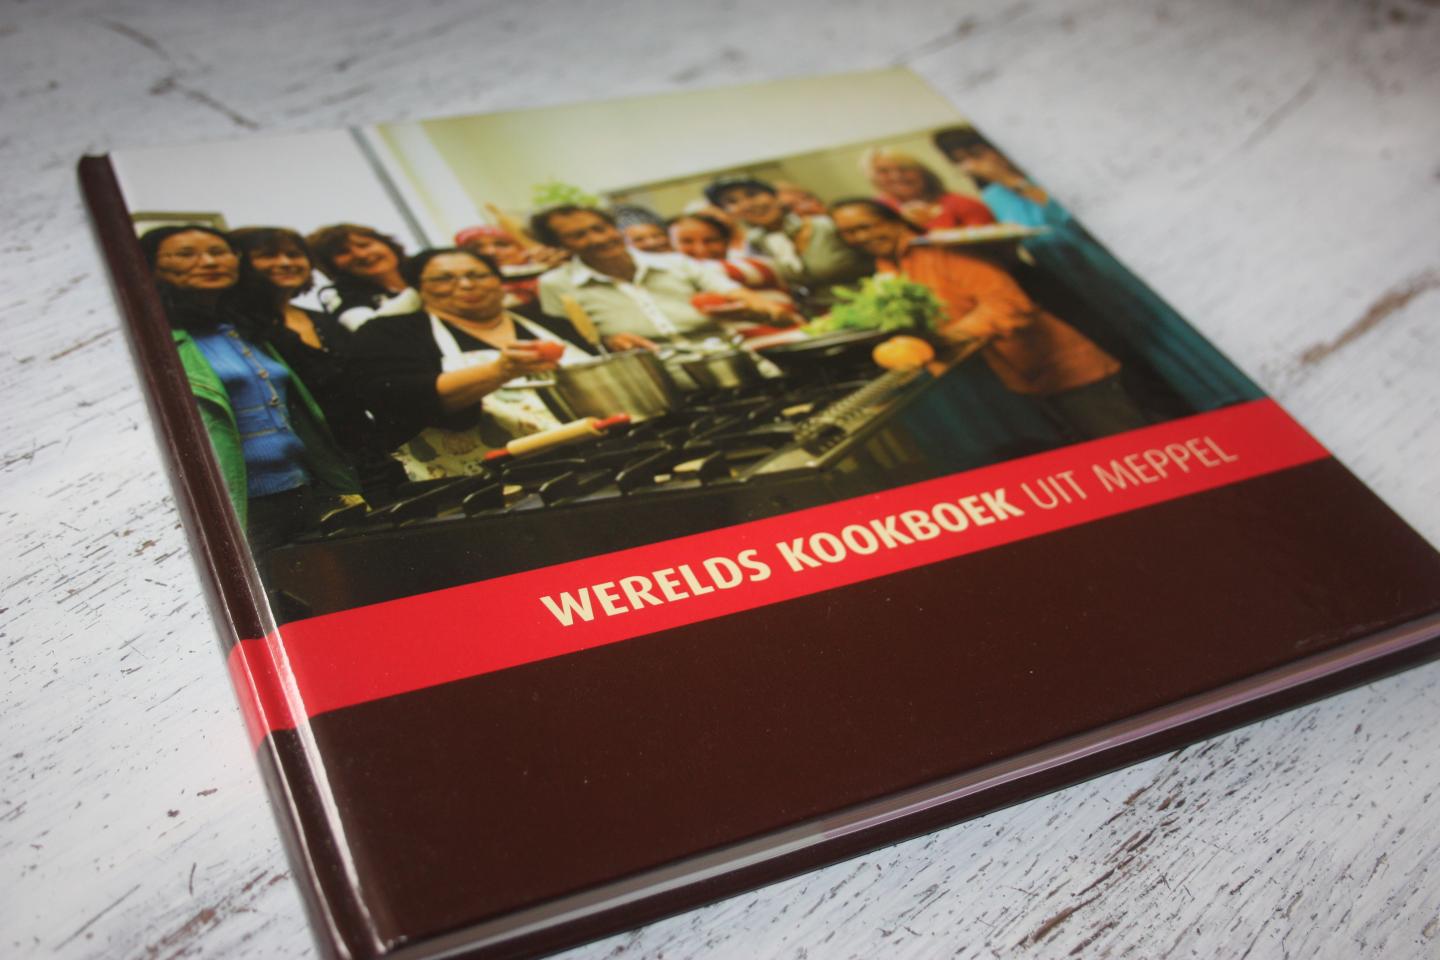 Een Wereld van Vrouwen - Werelds kookboek uit Meppel